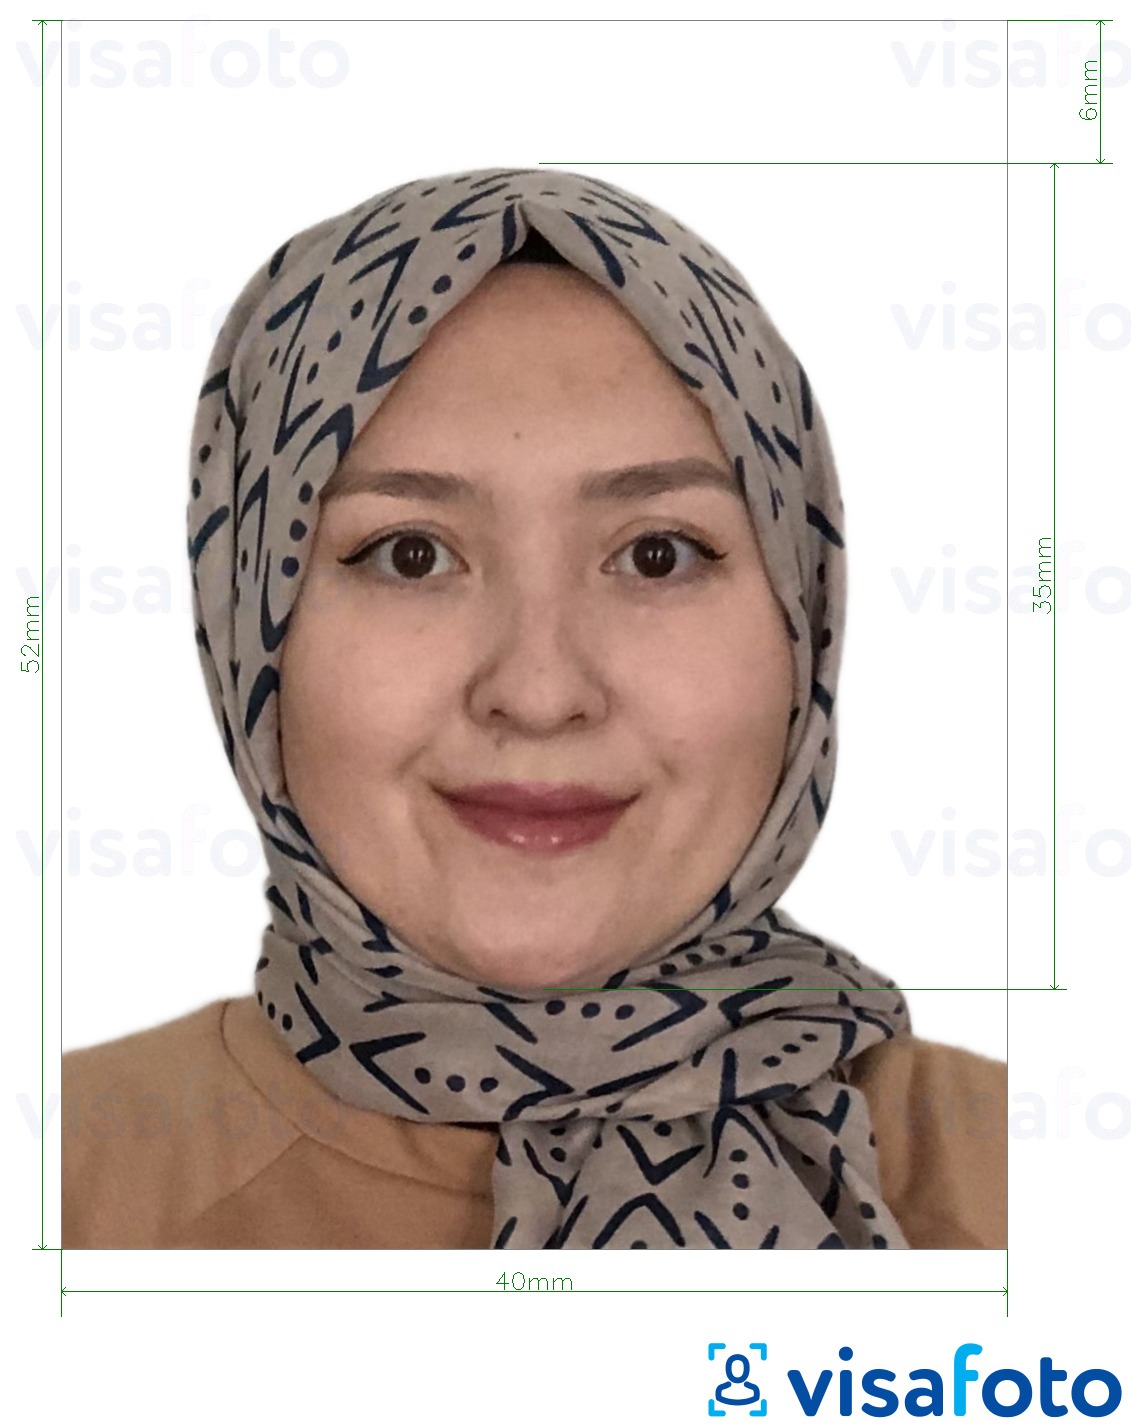 Primjer fotografije za Brunejska putovnica 5,2x4 cm (52x40 mm) s točno određenom veličinom